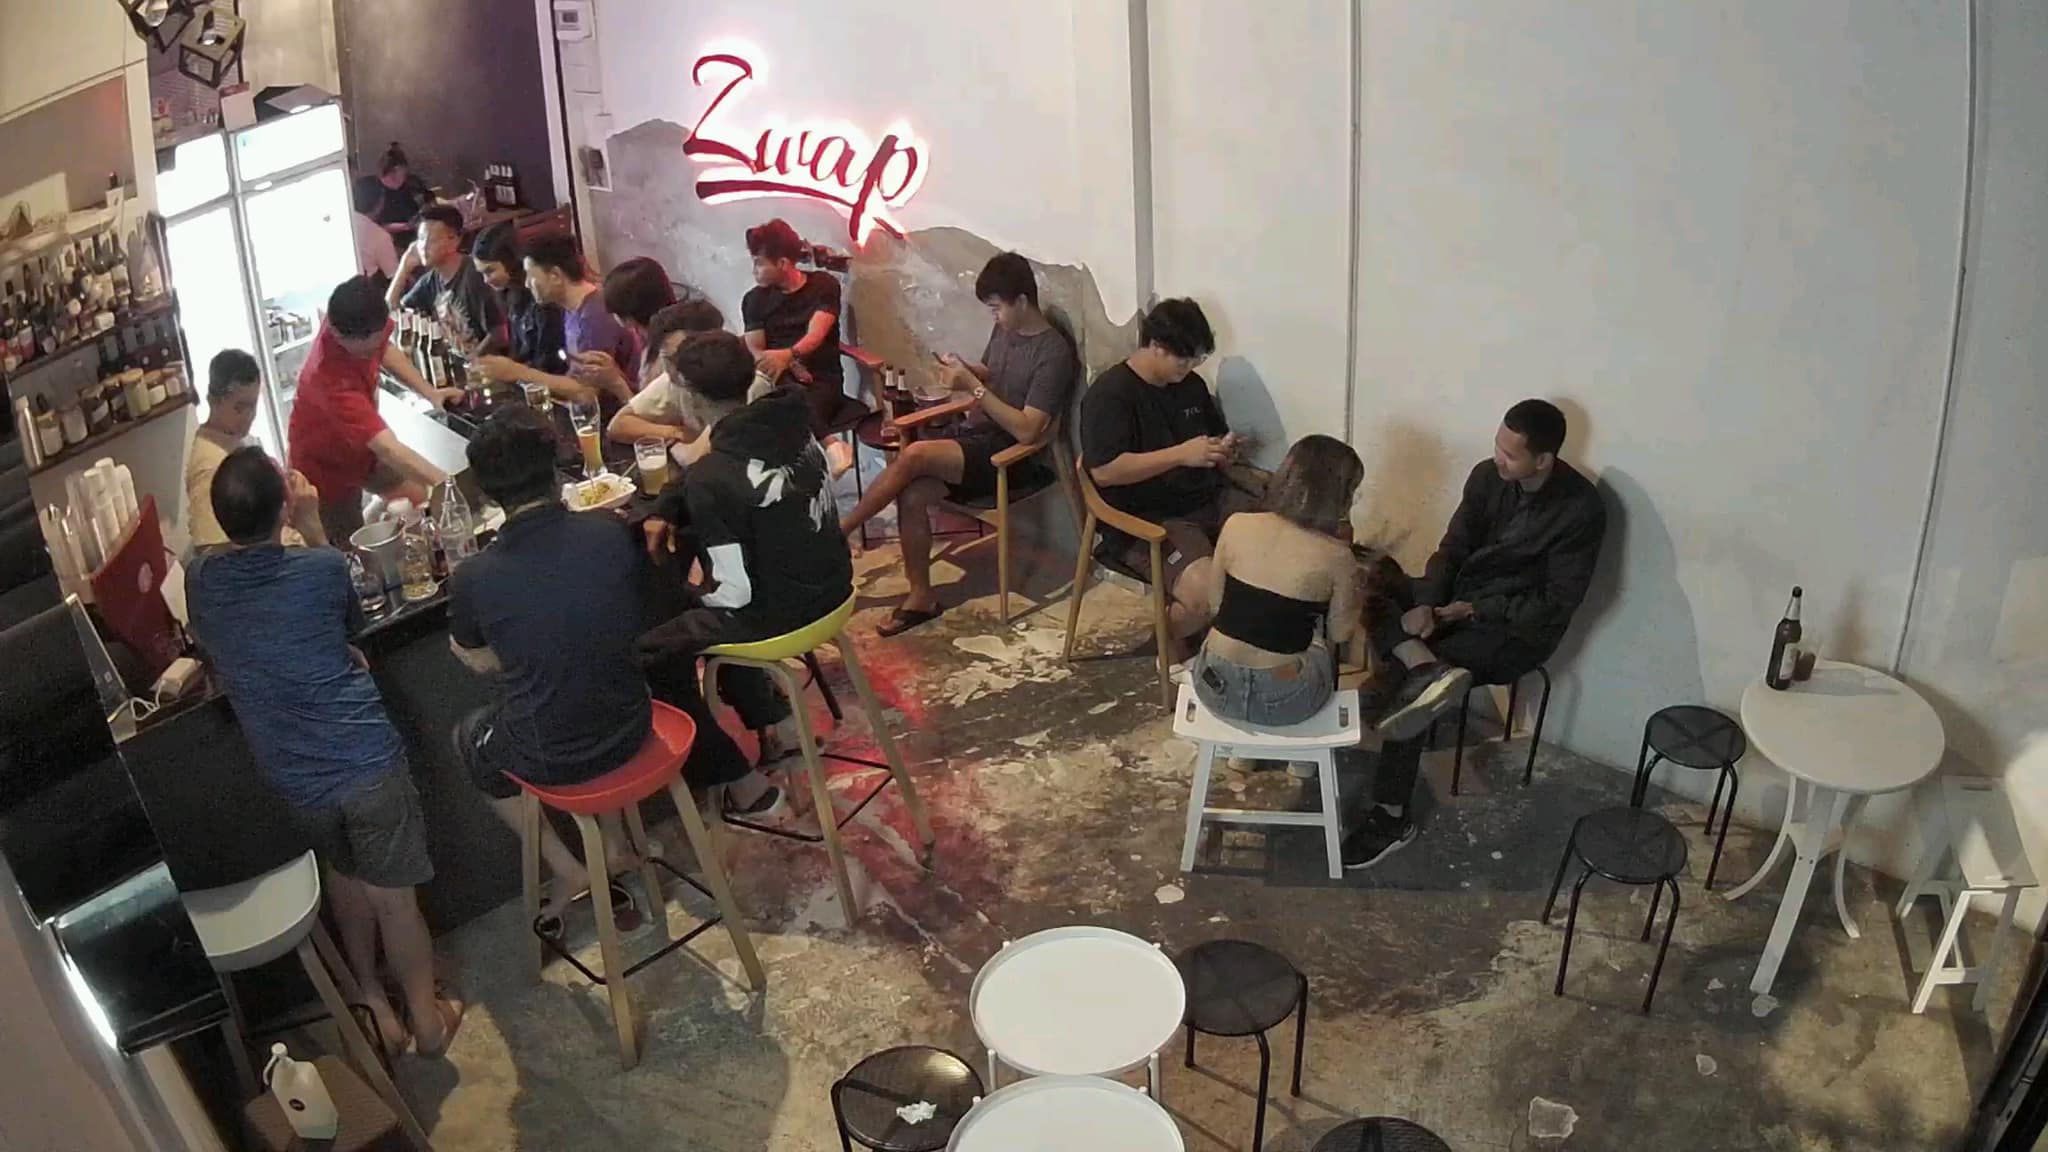 ซว็อพคาเฟ่แอนด์บาร์ (Zwap Café & Bar) : สระบุรี (Saraburi)